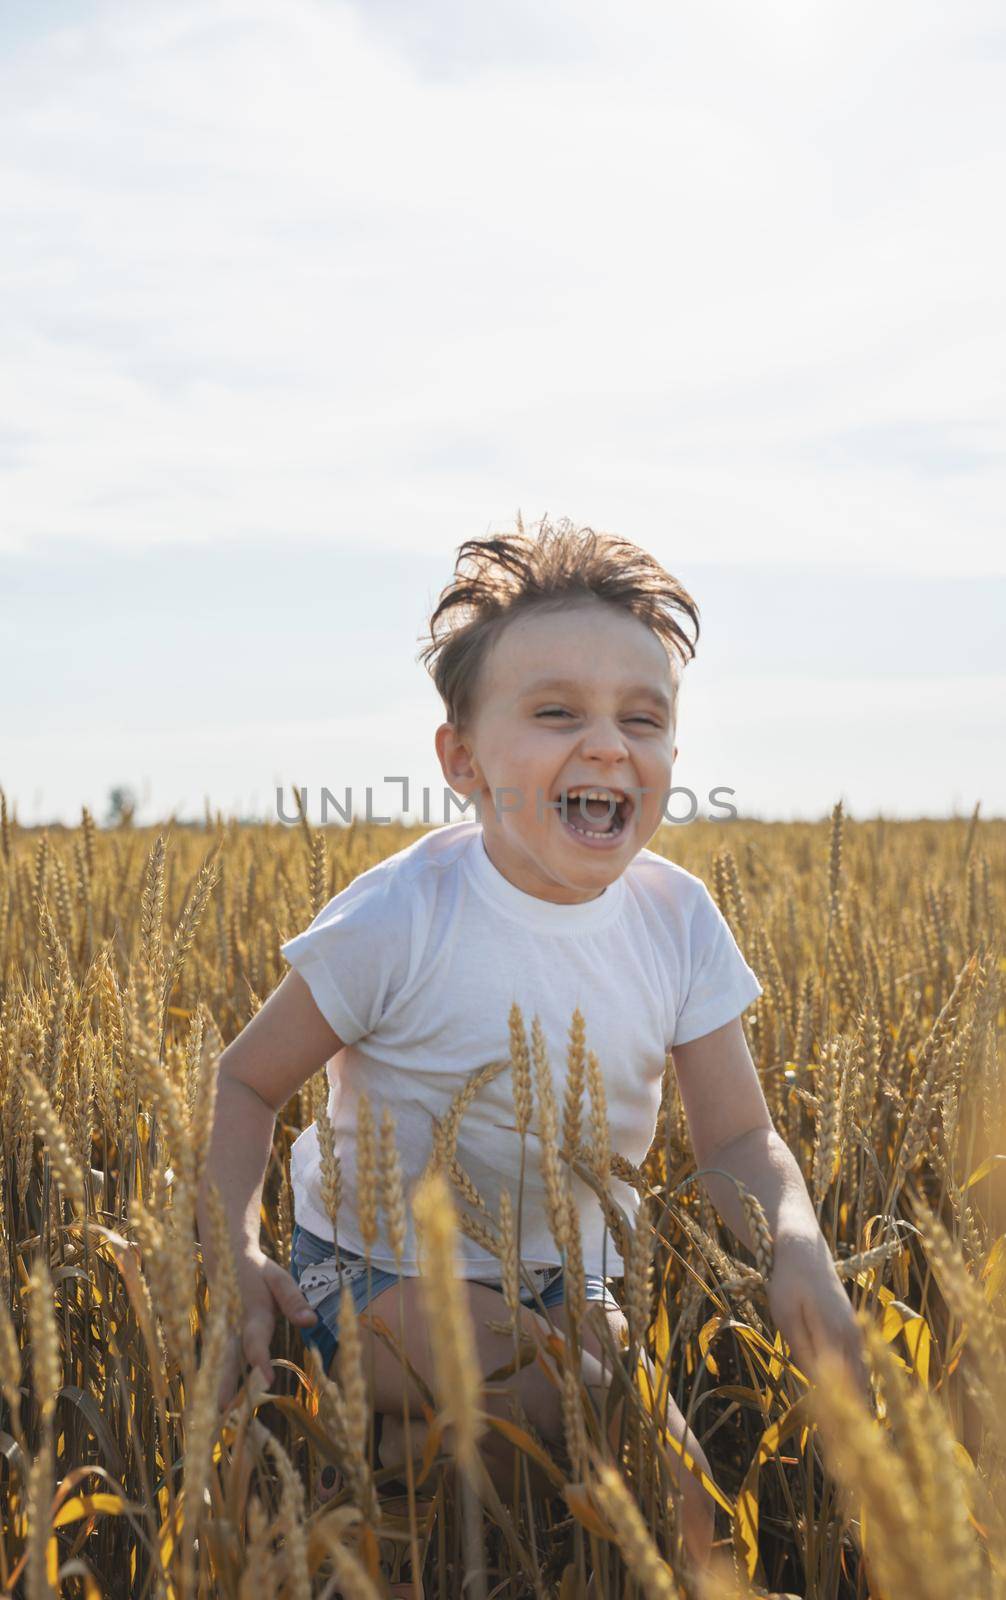 Cute boy walking across the wheat field, making funny faces by Desperada